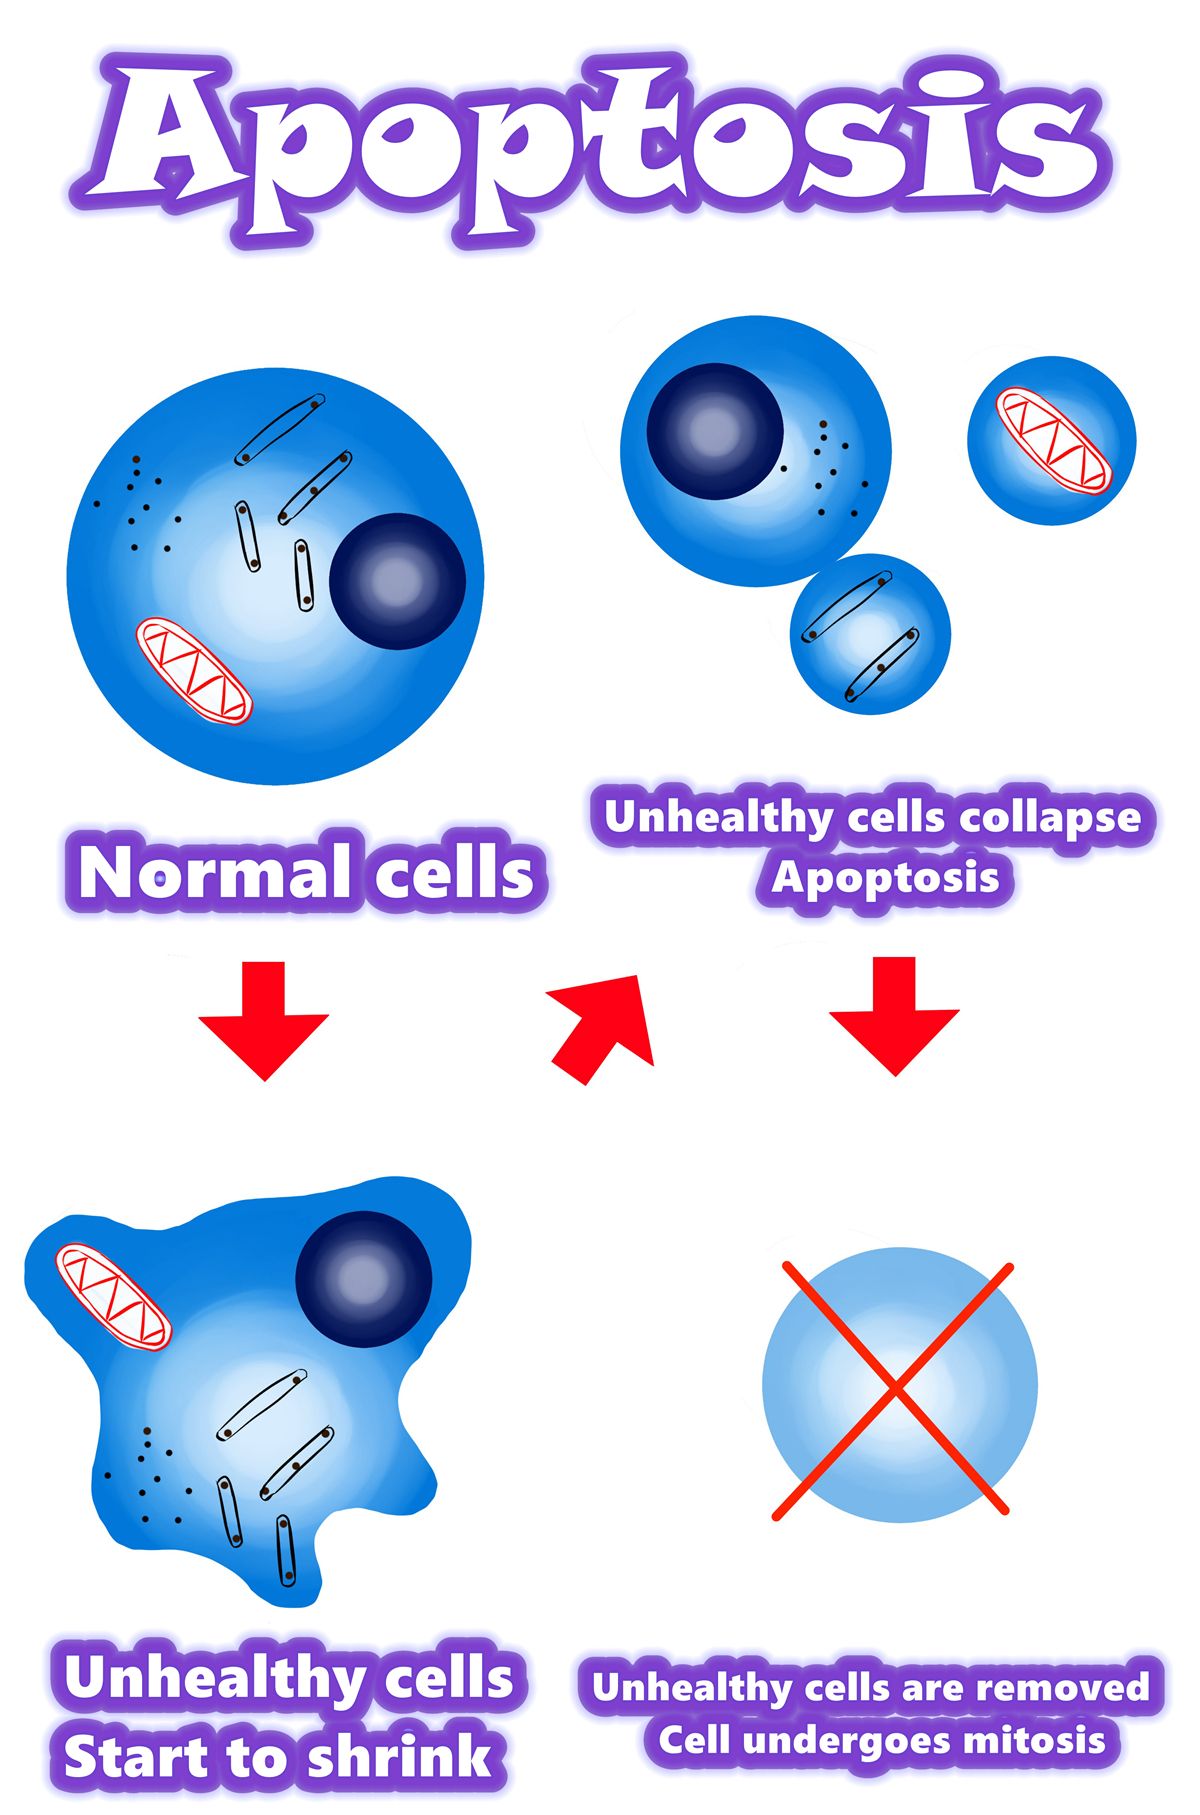 Solamargine | Labākais vēža šūnu risinājums 2021. gadā | Apoptoze pret vēža šūnām Apoptoze pret nenormālām šūnām | Apoptoze pret mutantu šūnām Pārskats / kopsavilkums / apoptozes mehānisms